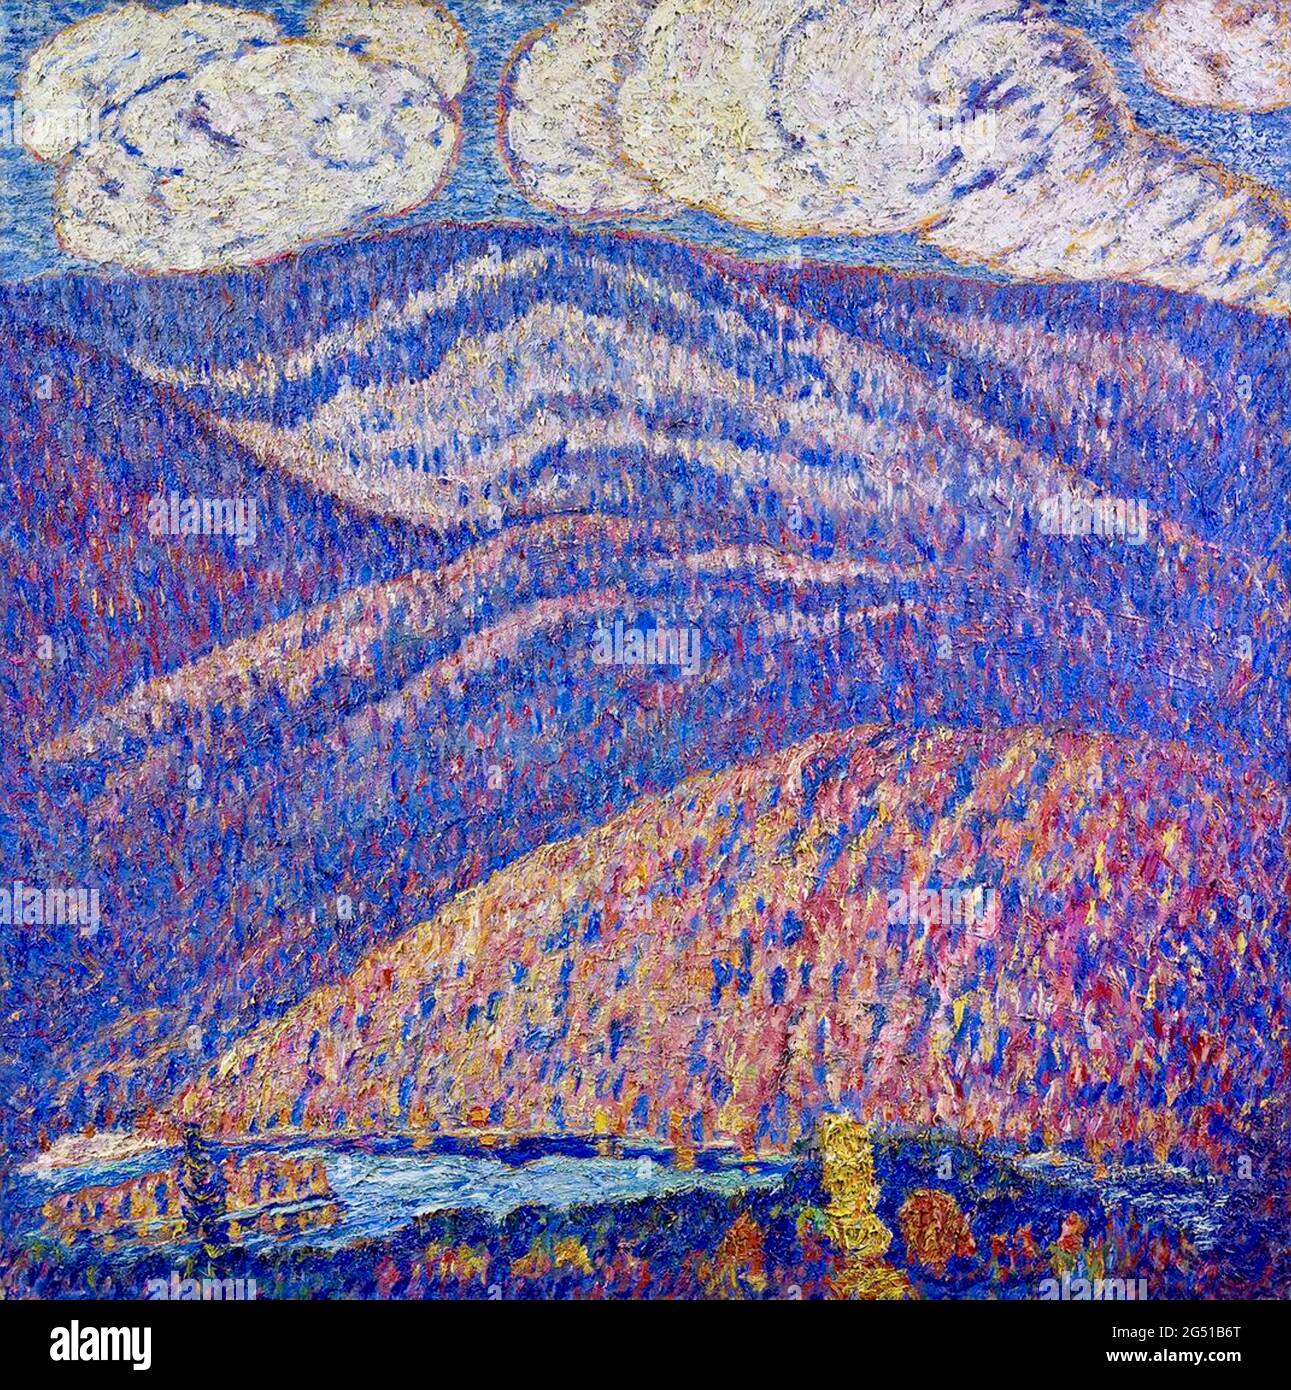 Opere d'arte paesaggistica di Marsden Hartley dal titolo Hall of the Mountain King. Foto Stock